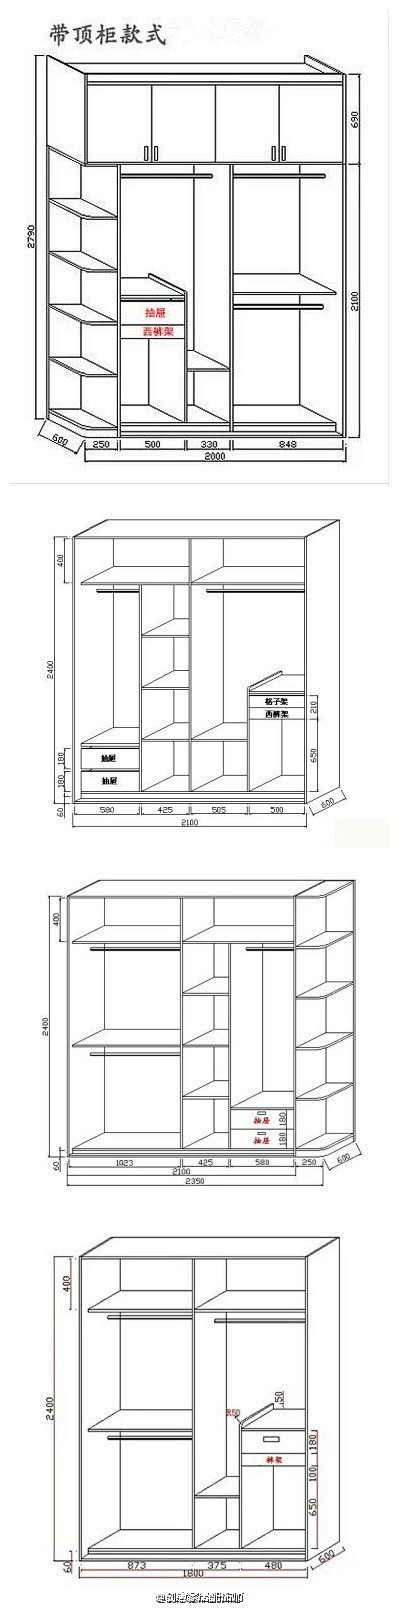 常用衣柜内部结构设计图 #家居微盘点# ...